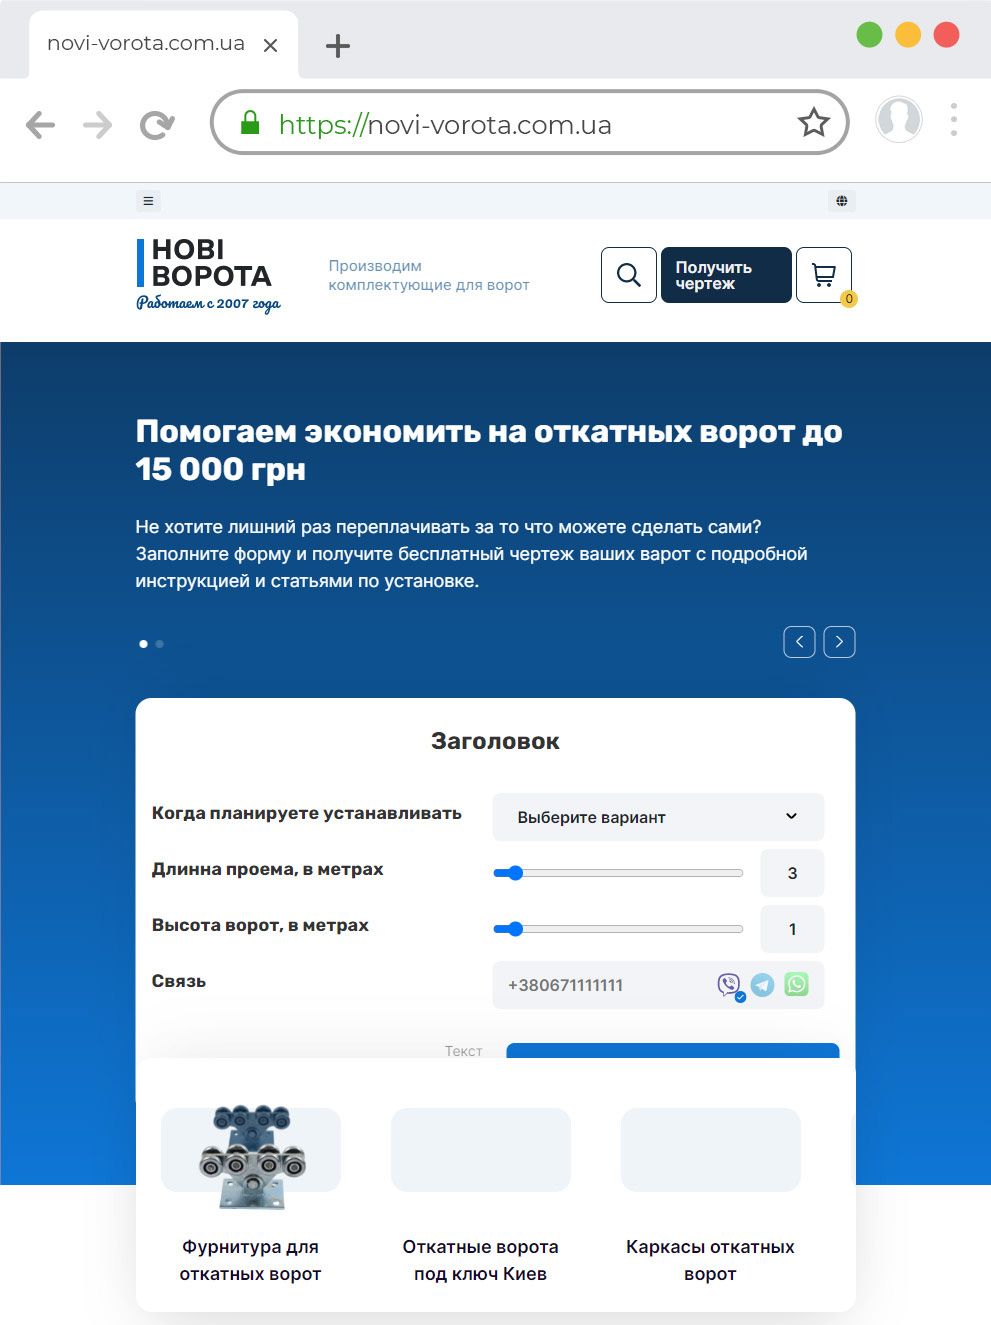 Редизайн сайта и доработка функционала novi-vorota